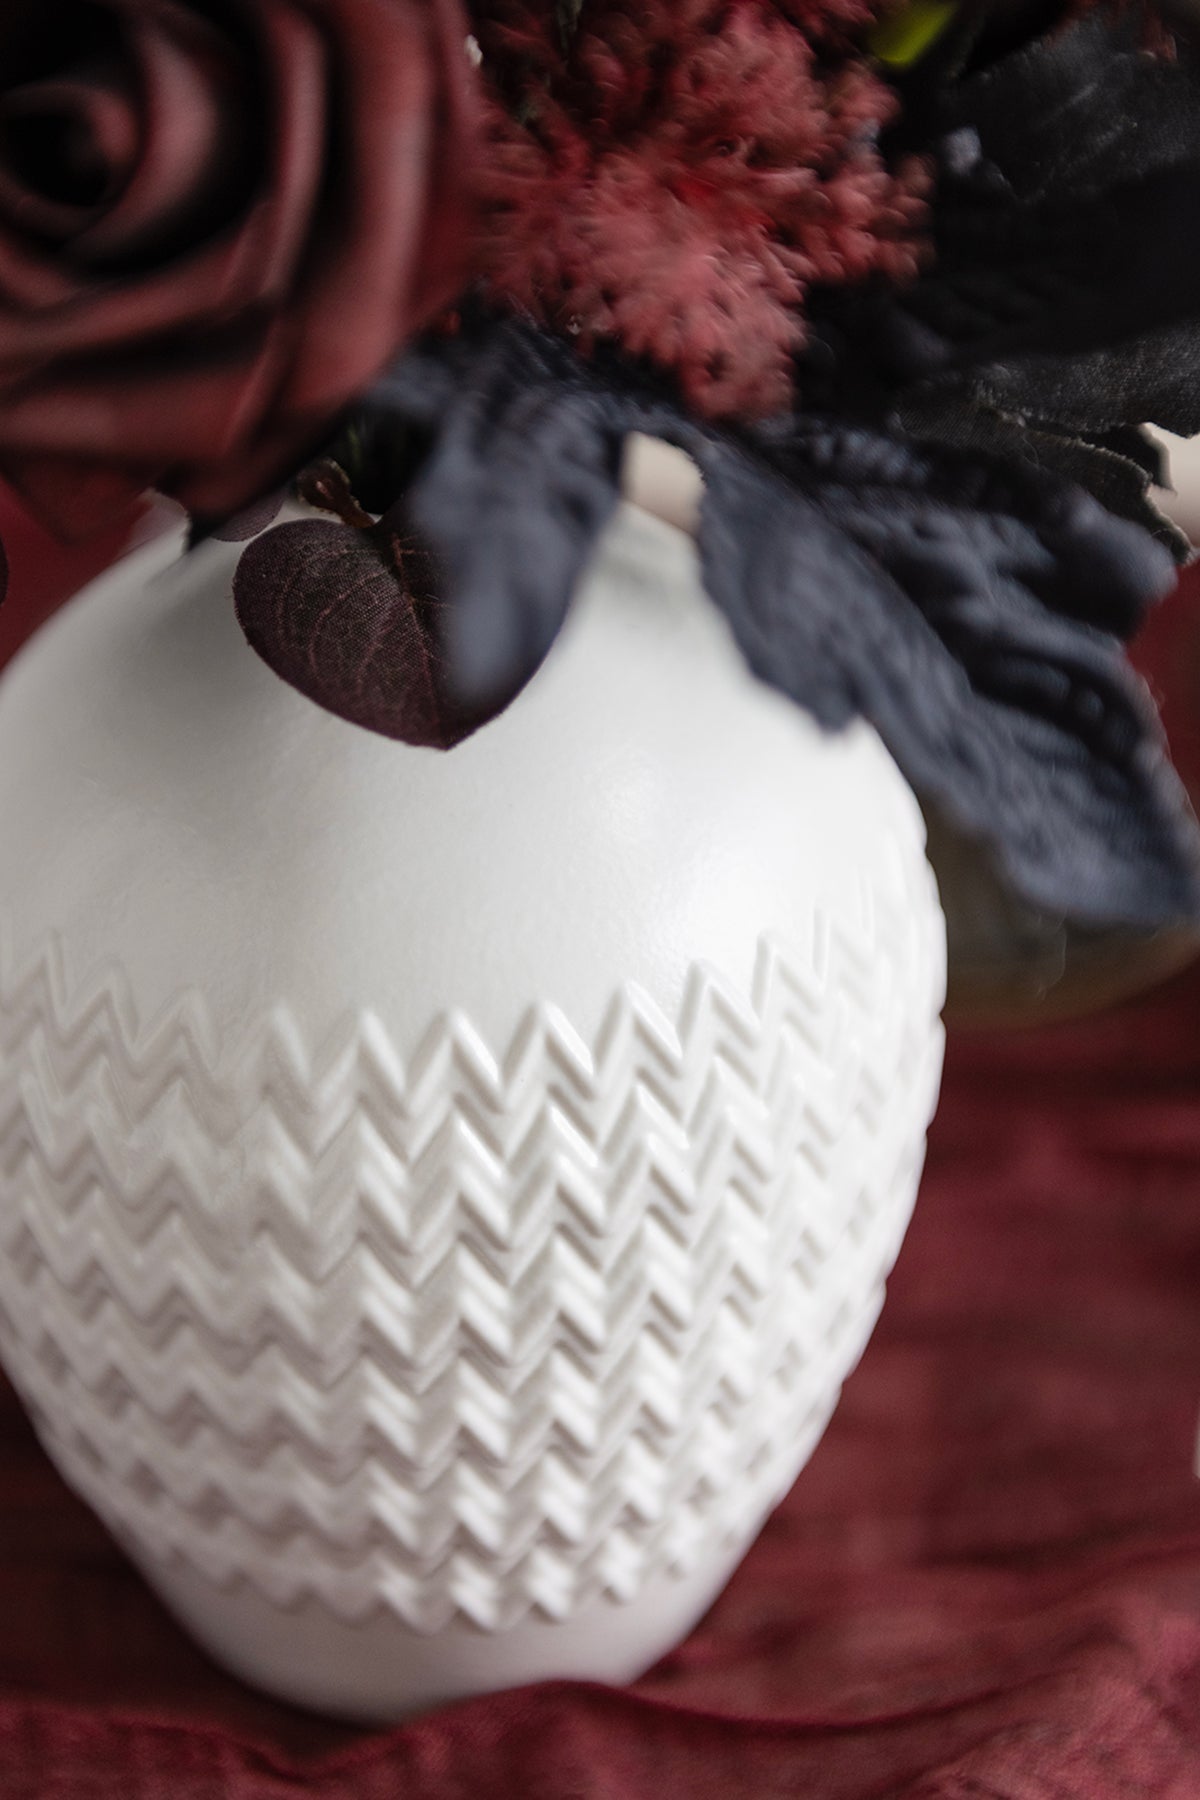 Embossed Vintage Vase in Moody Burgundy & Black